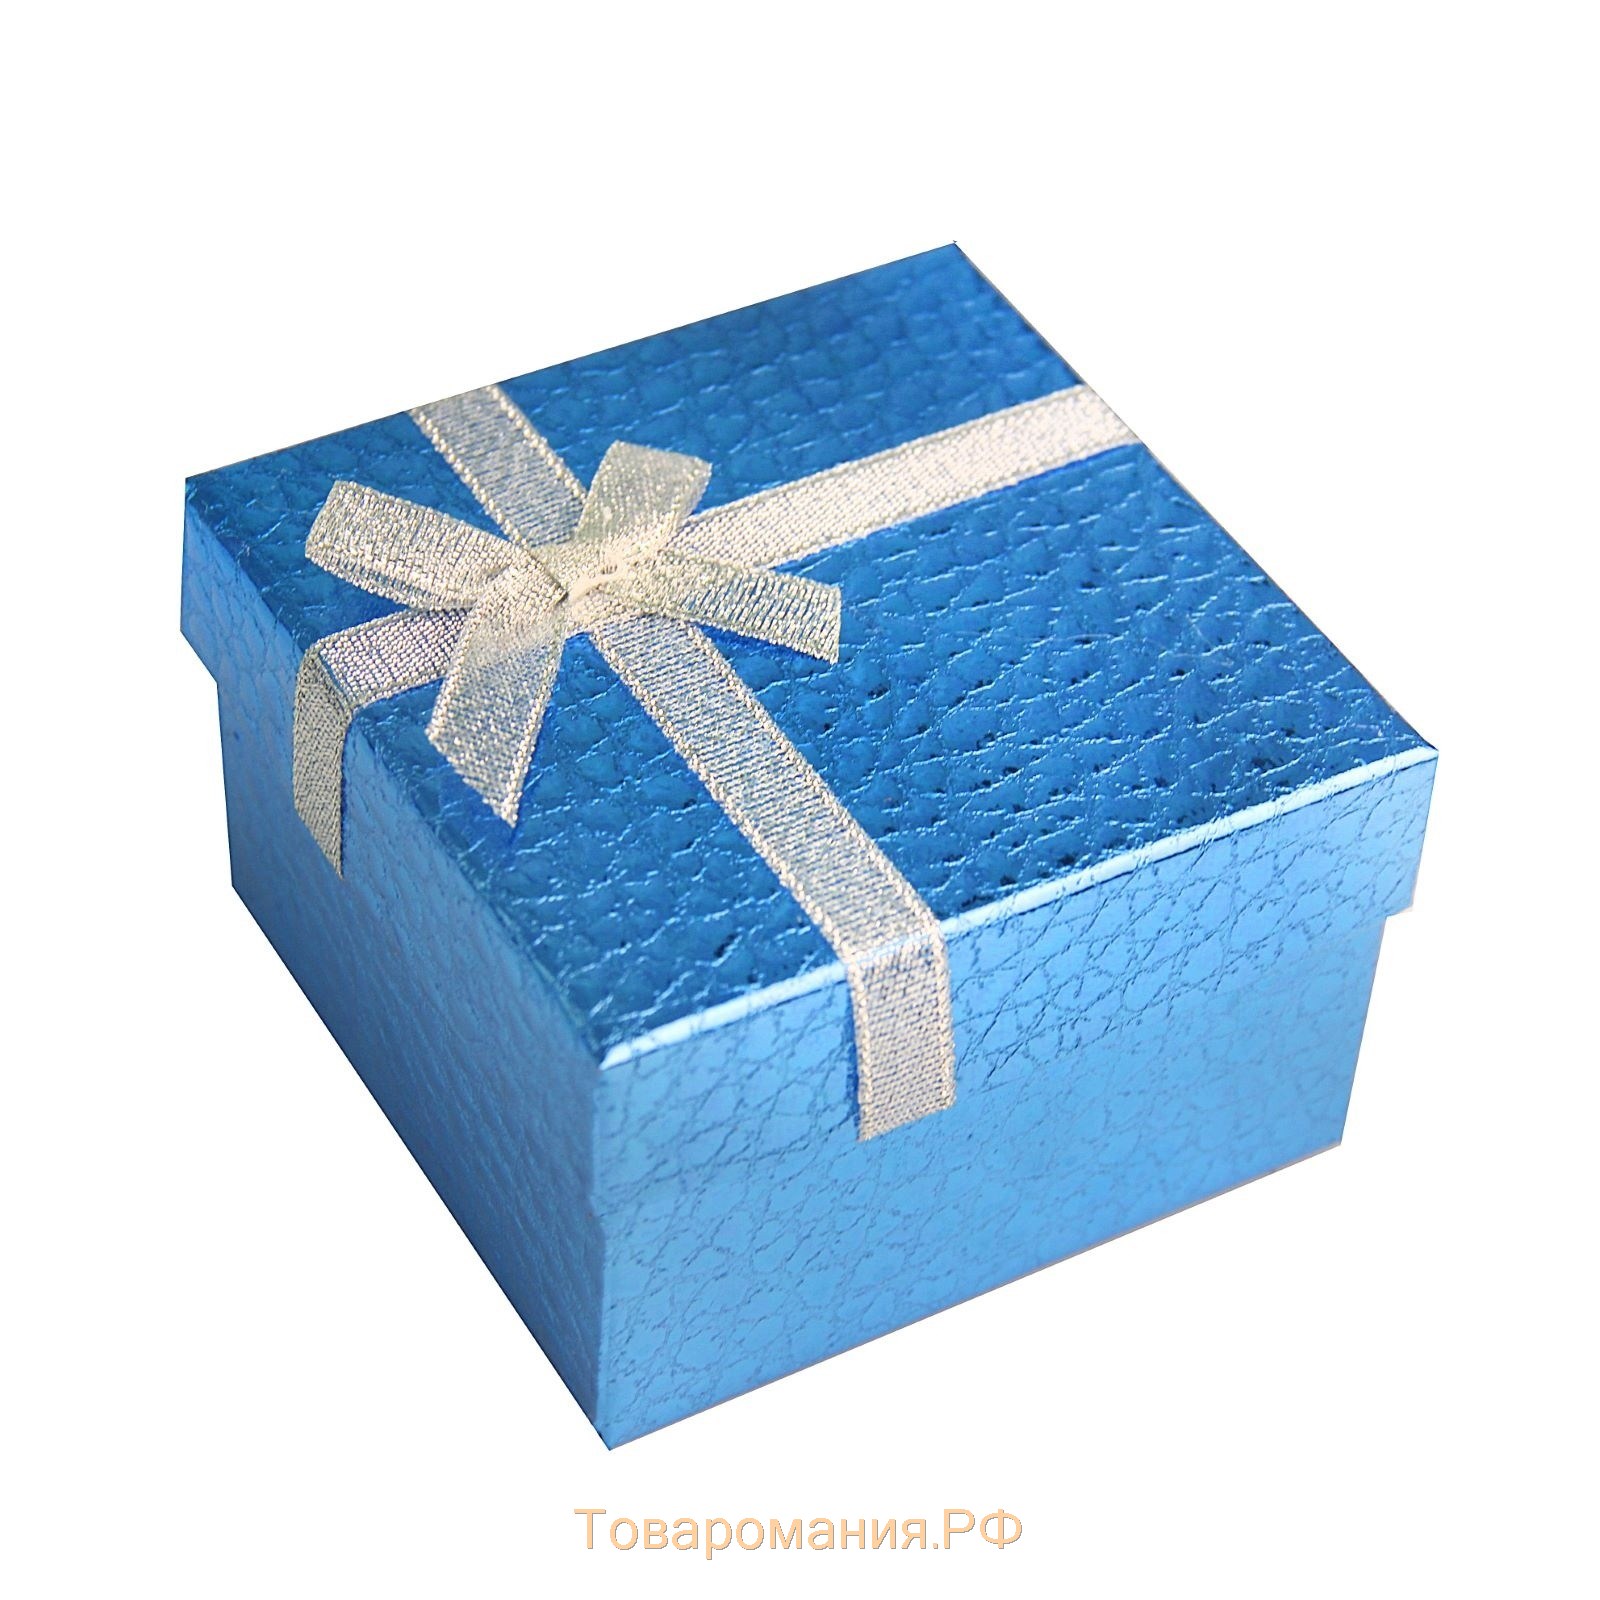 Подарок синий цвет. Подарочная коробочка. Подарочная коробка голубого цвета. Подарок синяя коробка. Коробочка голубой подарок.